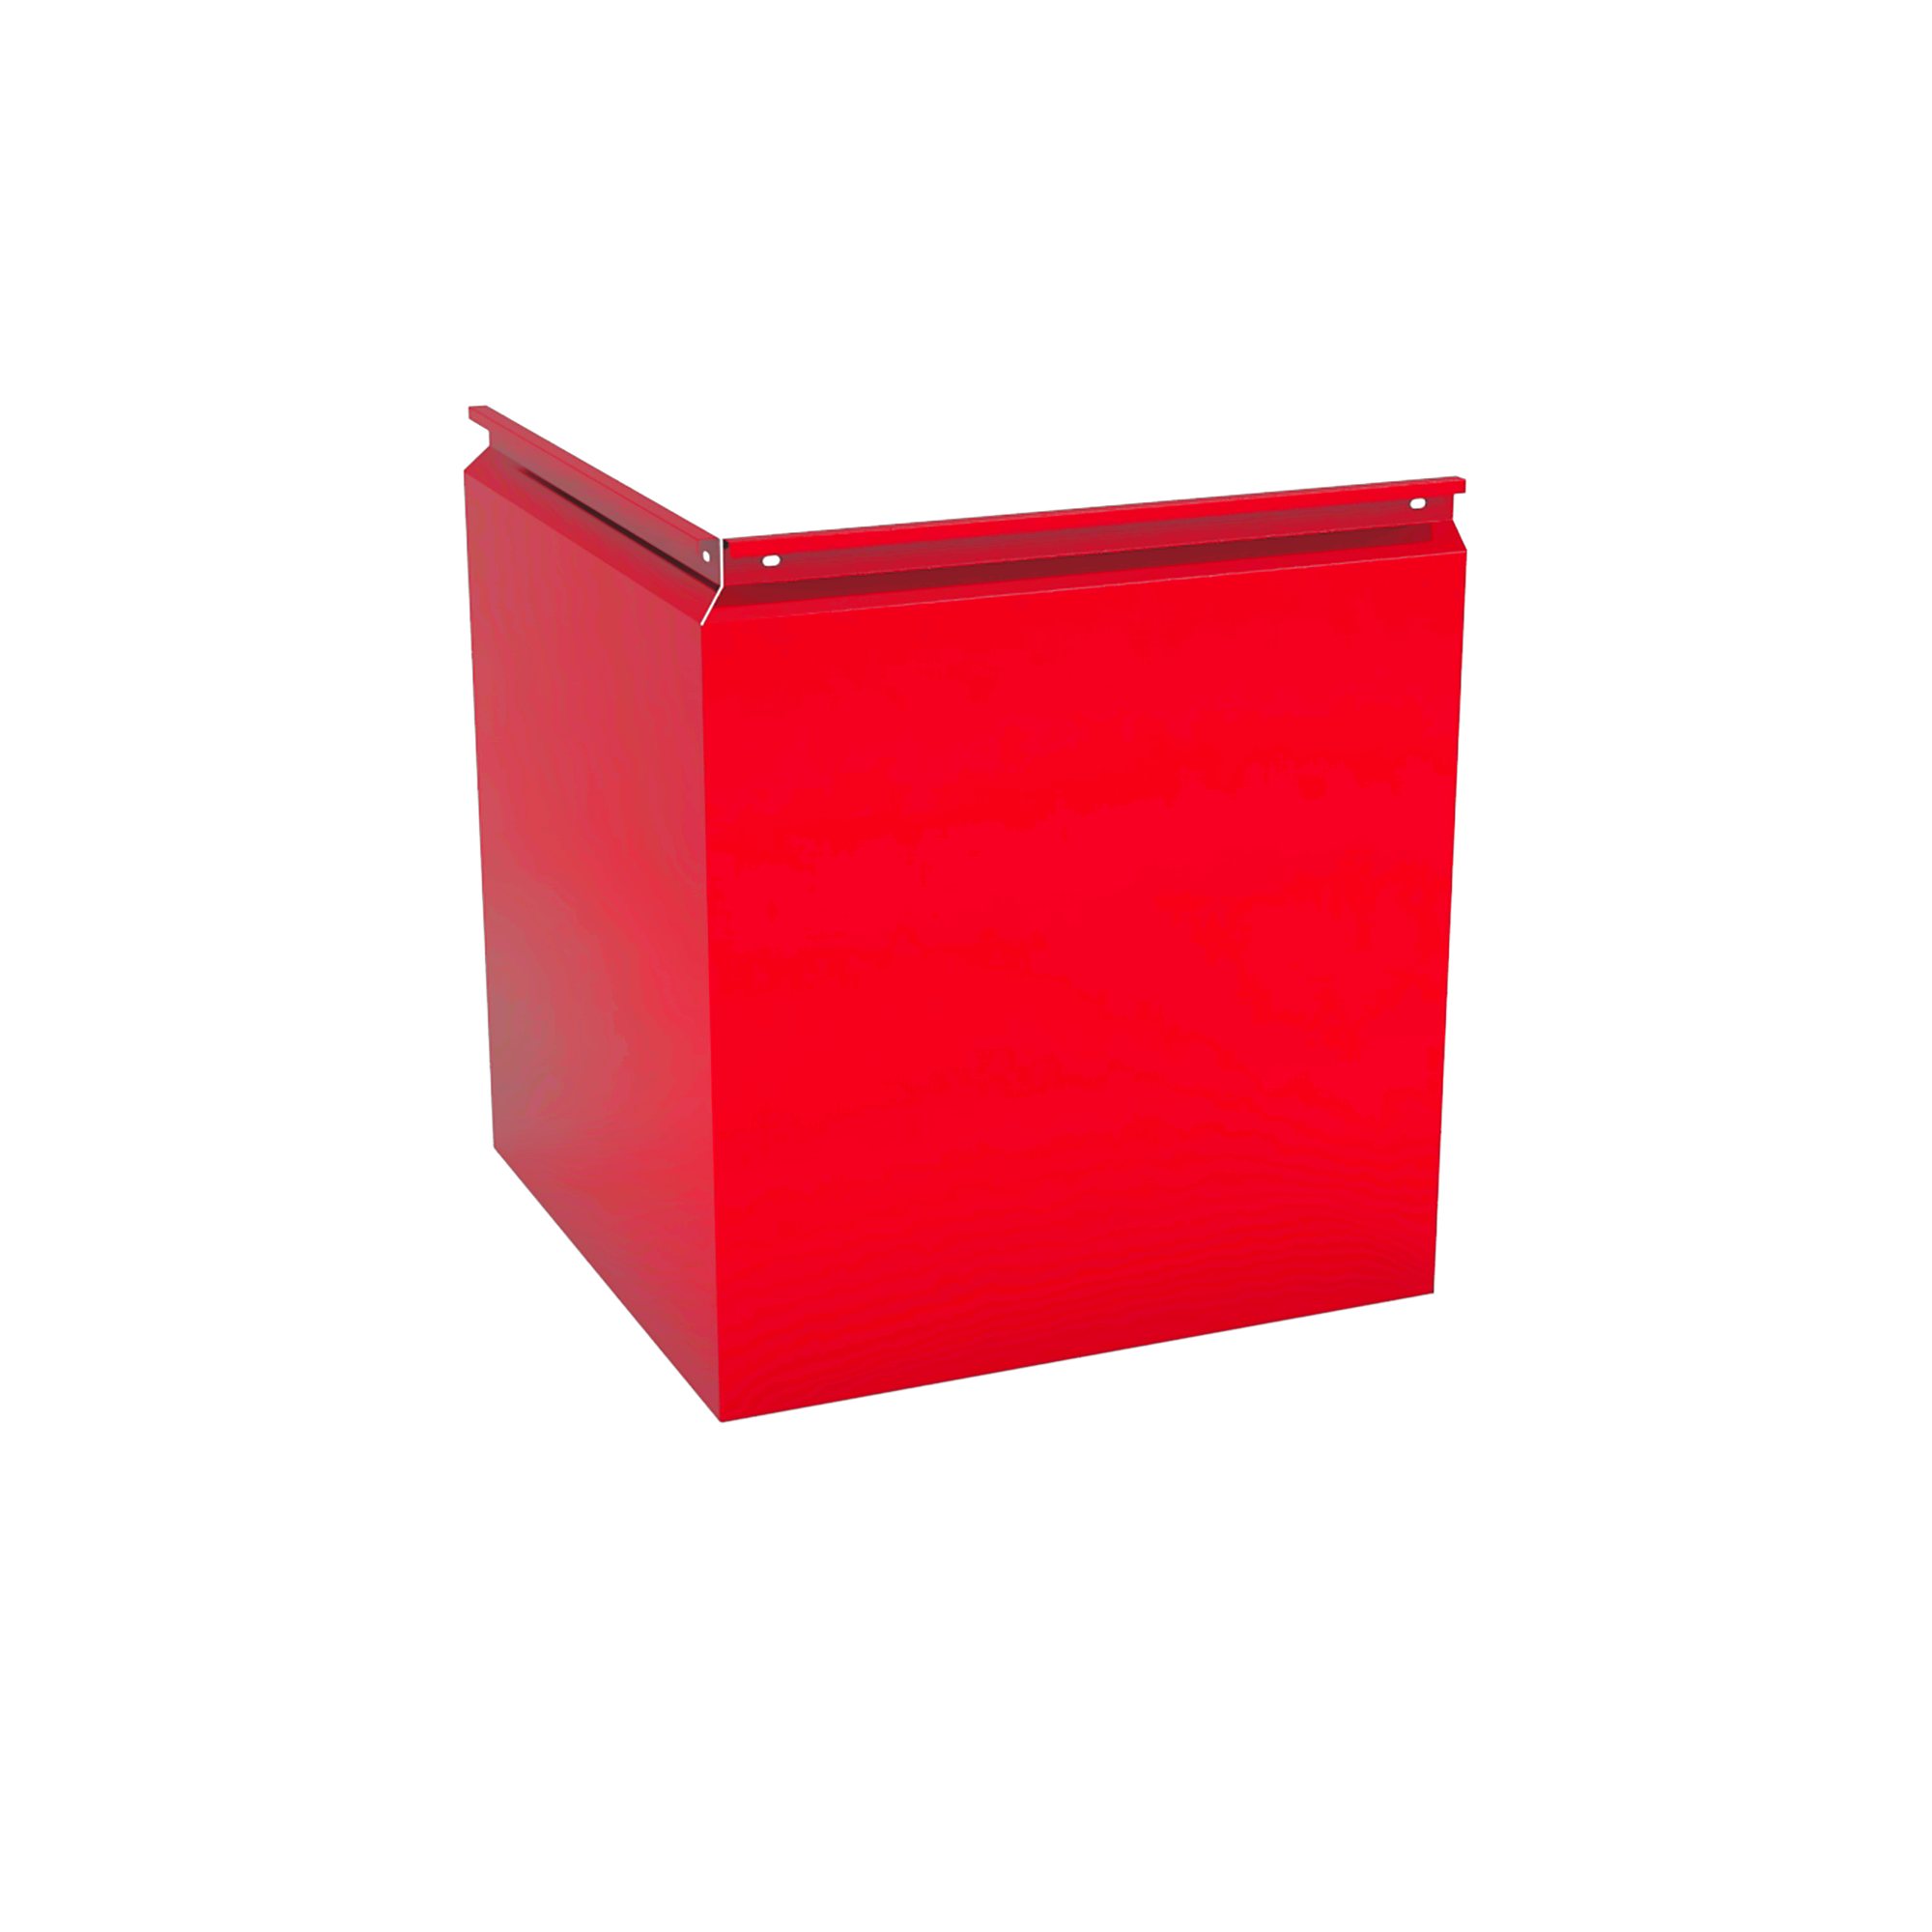 Фасадная кассета Угловая 550 Транспортный красный 0,7 мм Фасадные кассеты Кровля Сервис